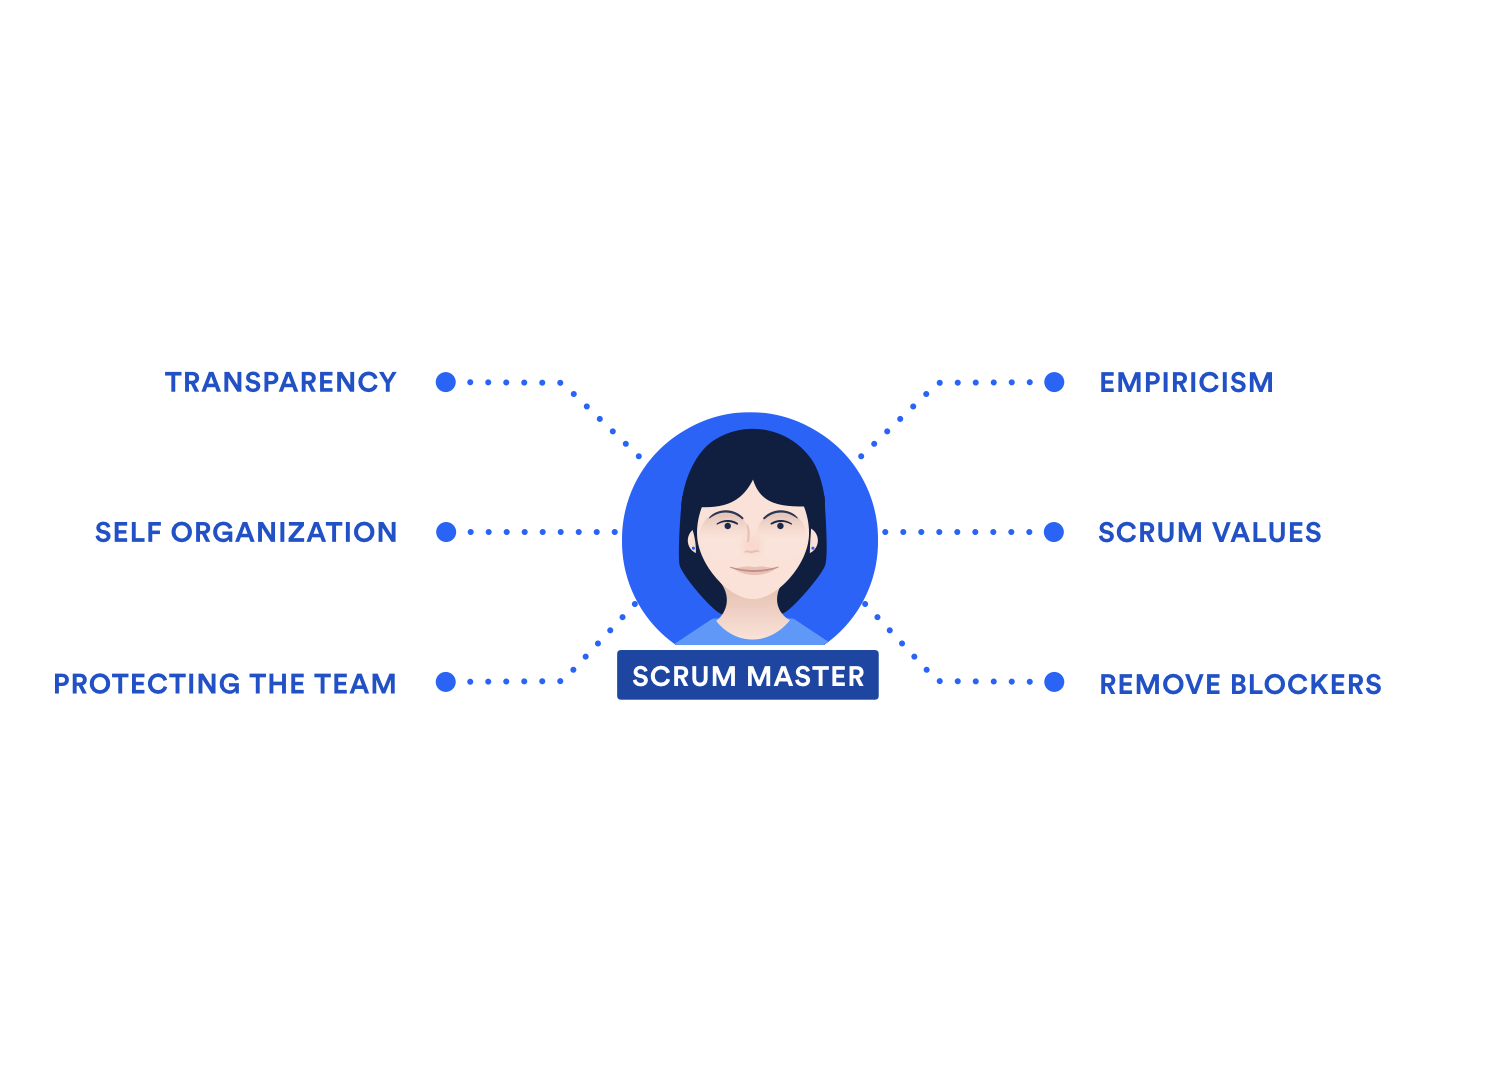 투명성, 경험주의, 자체 조직, 스크럼 가치, 팀 보호, 블로커 제거와 같은 스크럼 마스터의 책임을 보여주는 다이어그램.